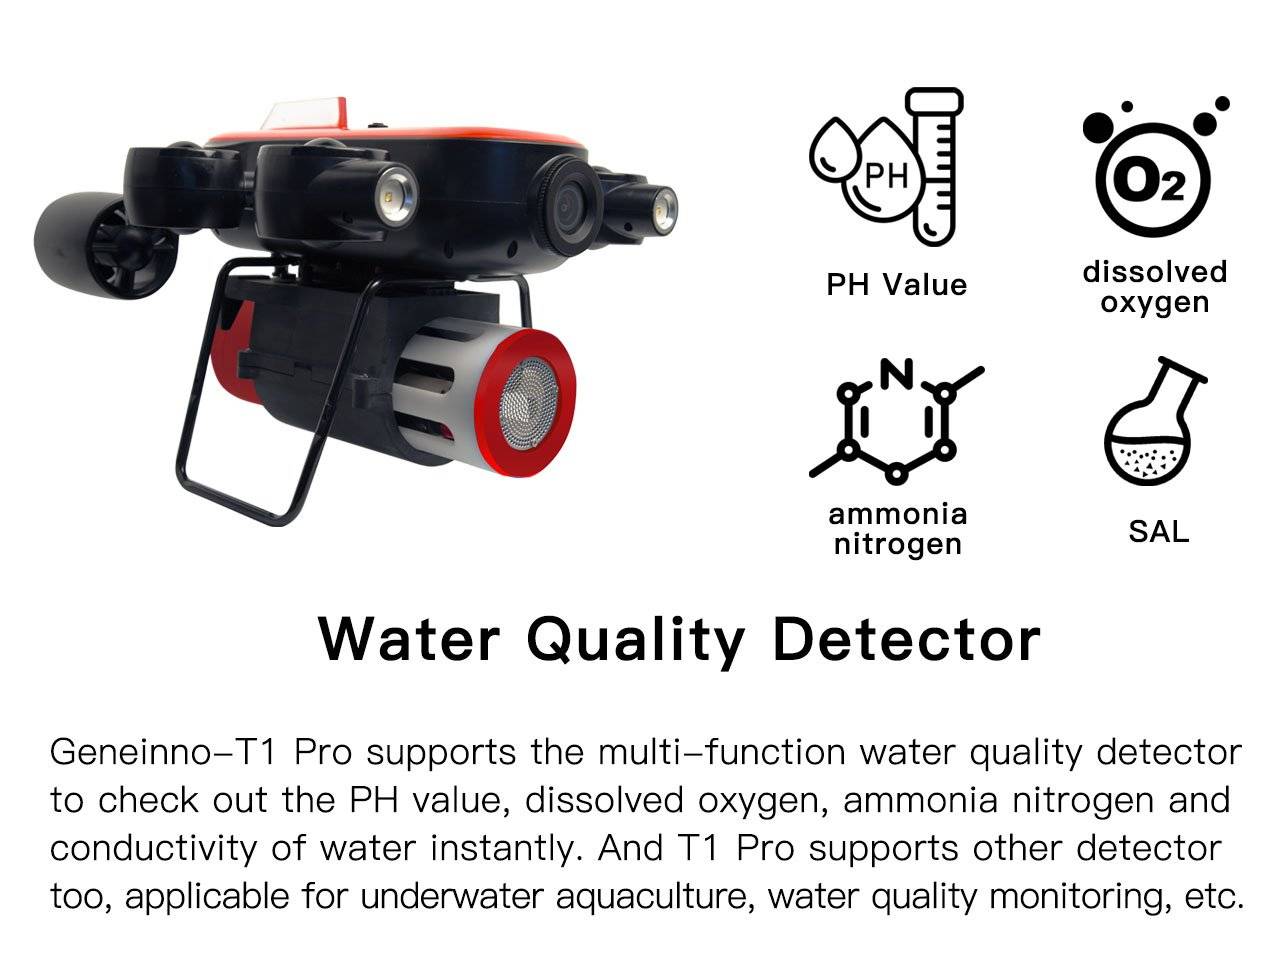 water-quality-detector-geneinno-t1-pro-underwater-drone.jpg